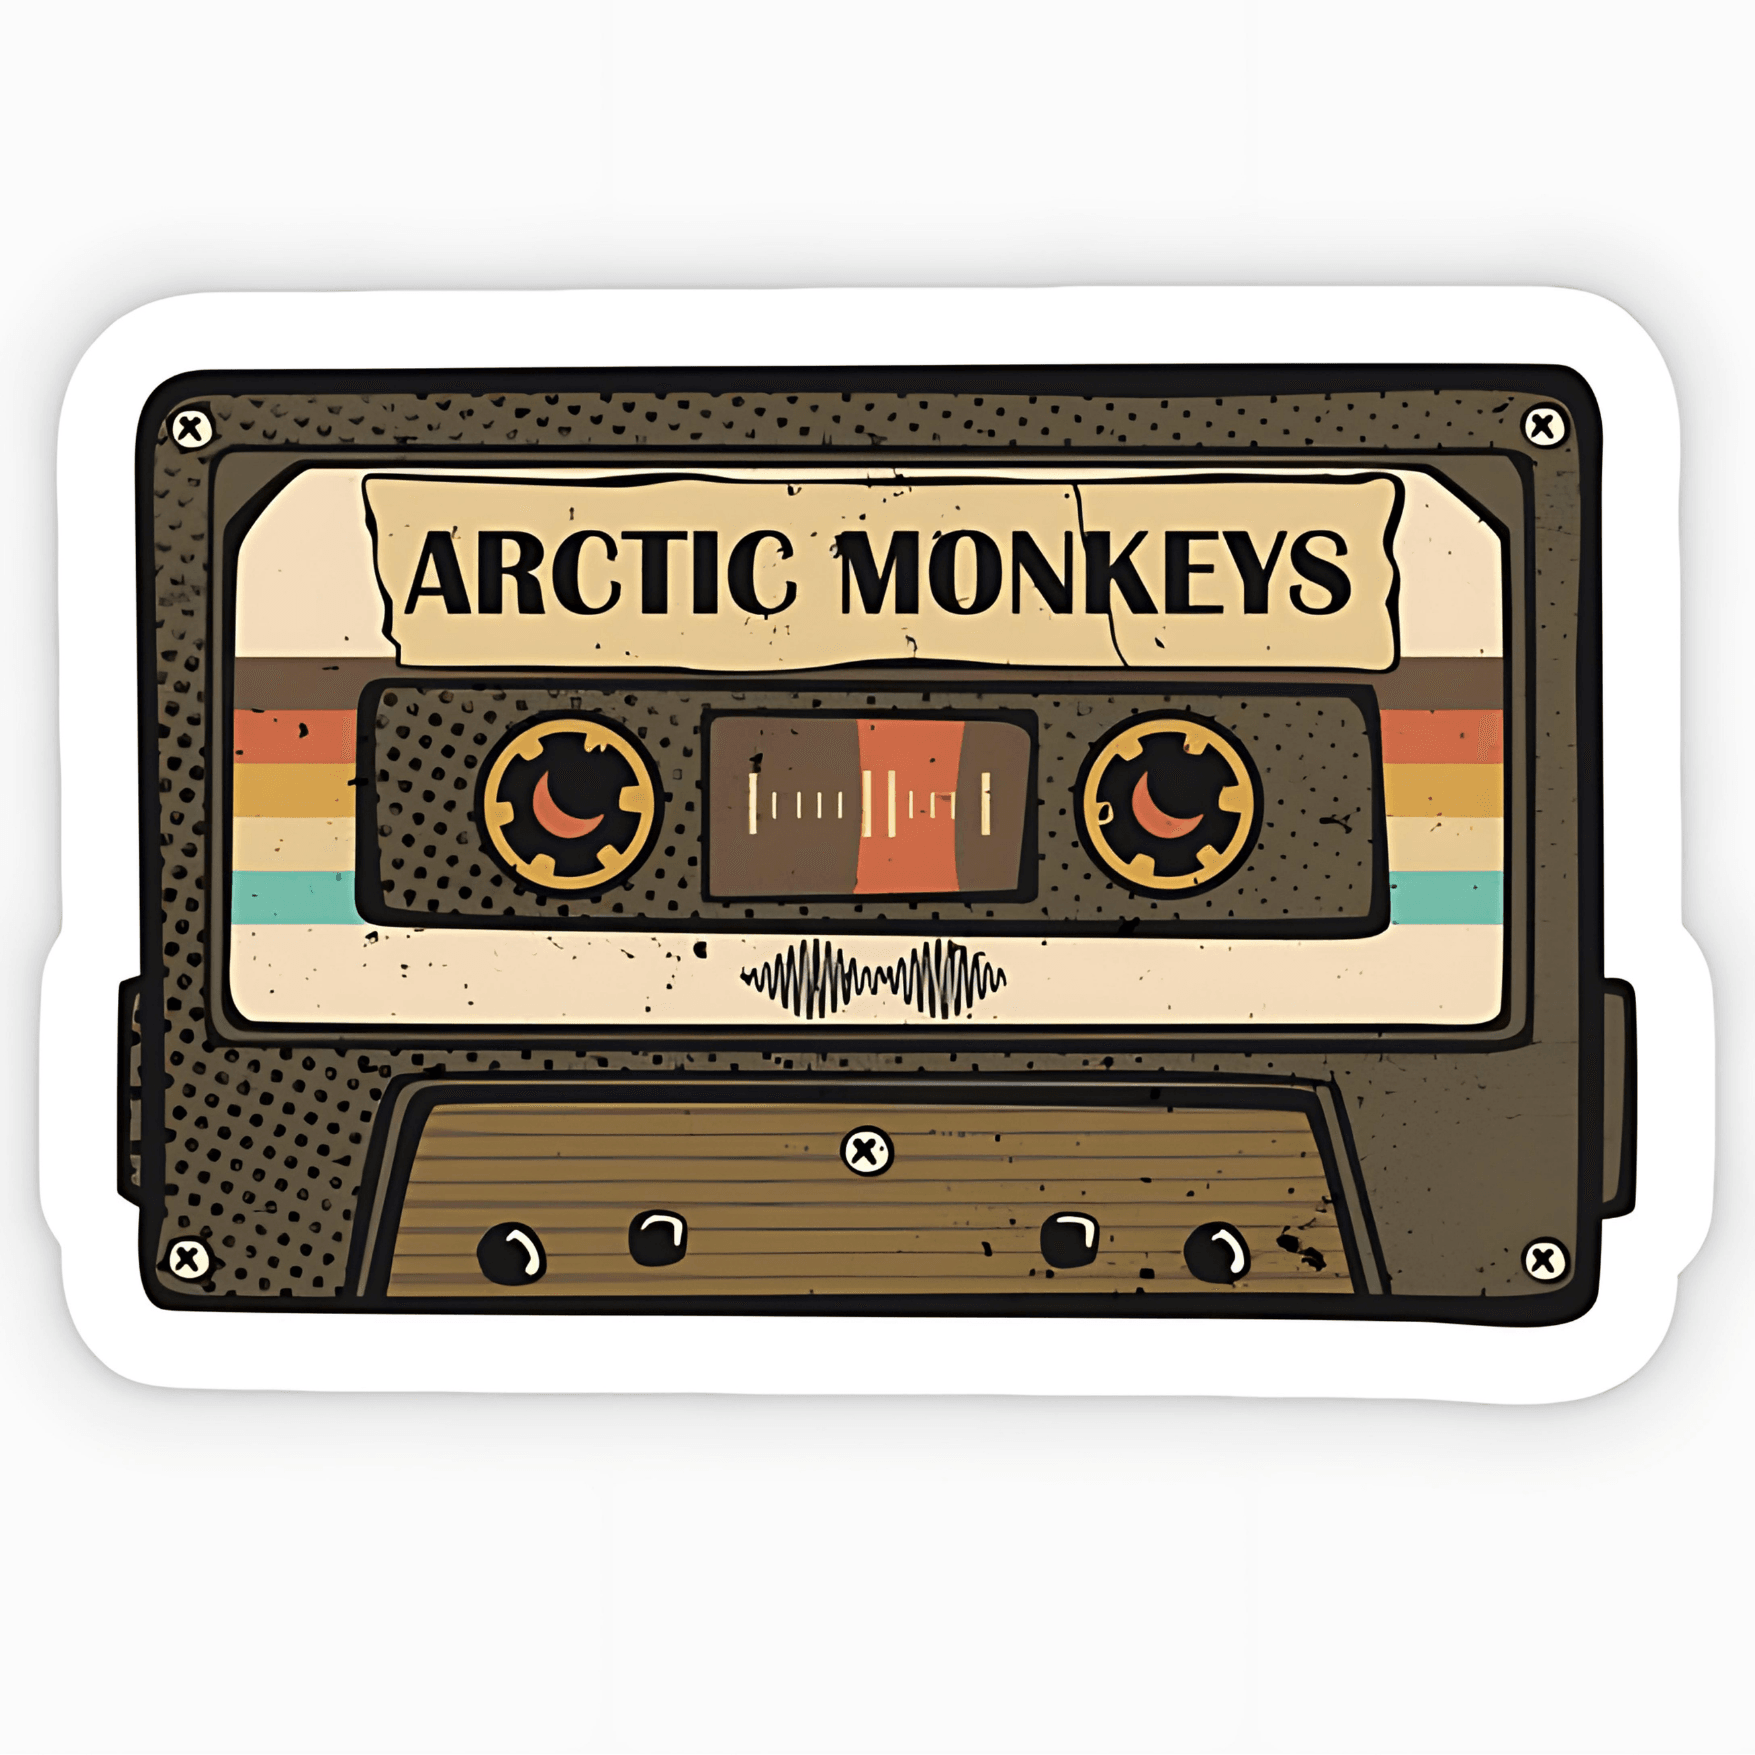 Arcetic Monkeys sticker 6cm